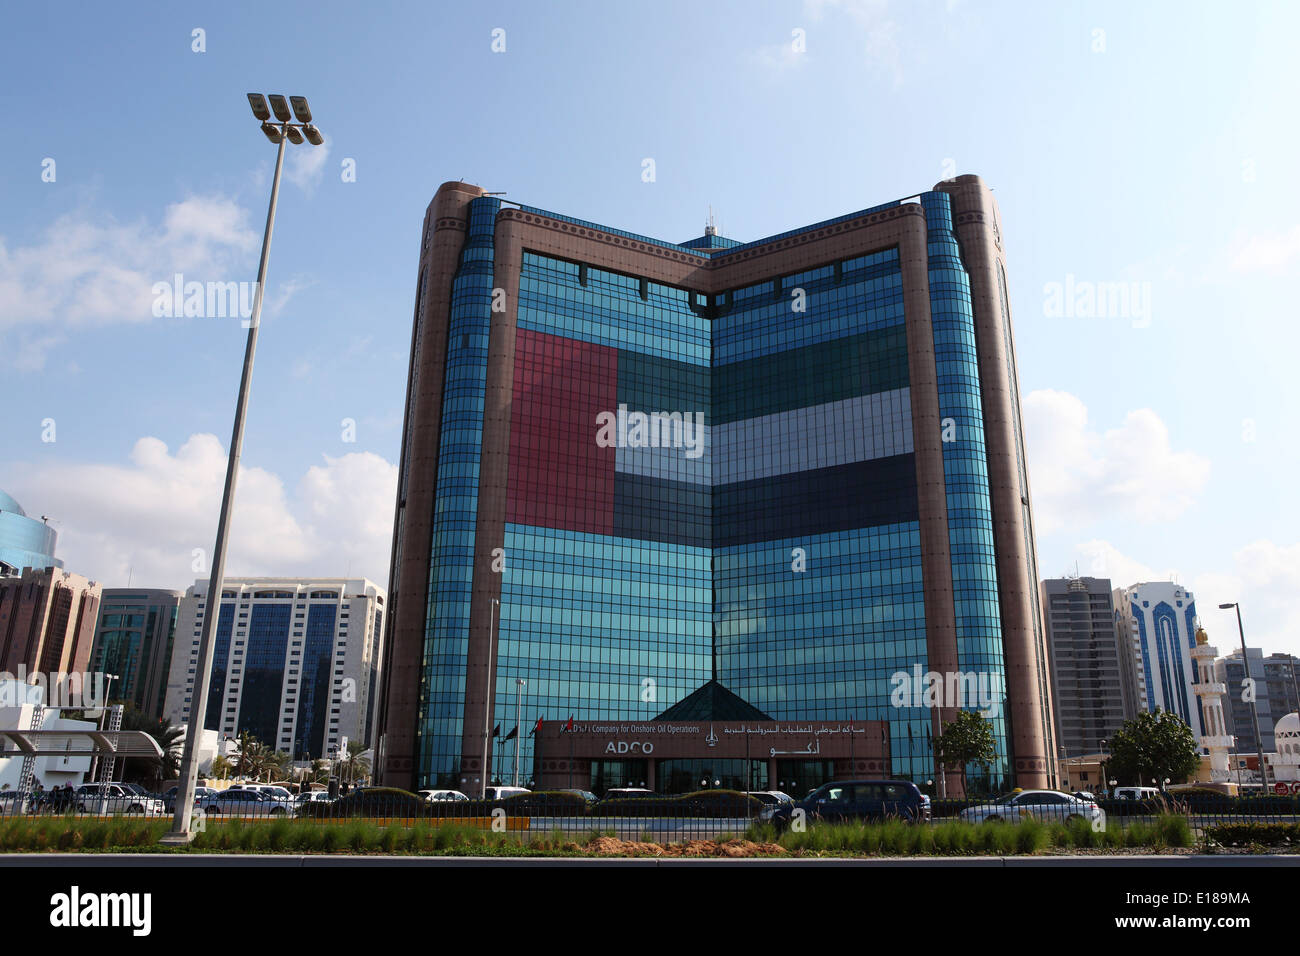 La Société d'Abu Dhabi pour l'exploration pétrolière (ADCO) à Abu Dhabi, Emirats Arabes Unis. Banque D'Images